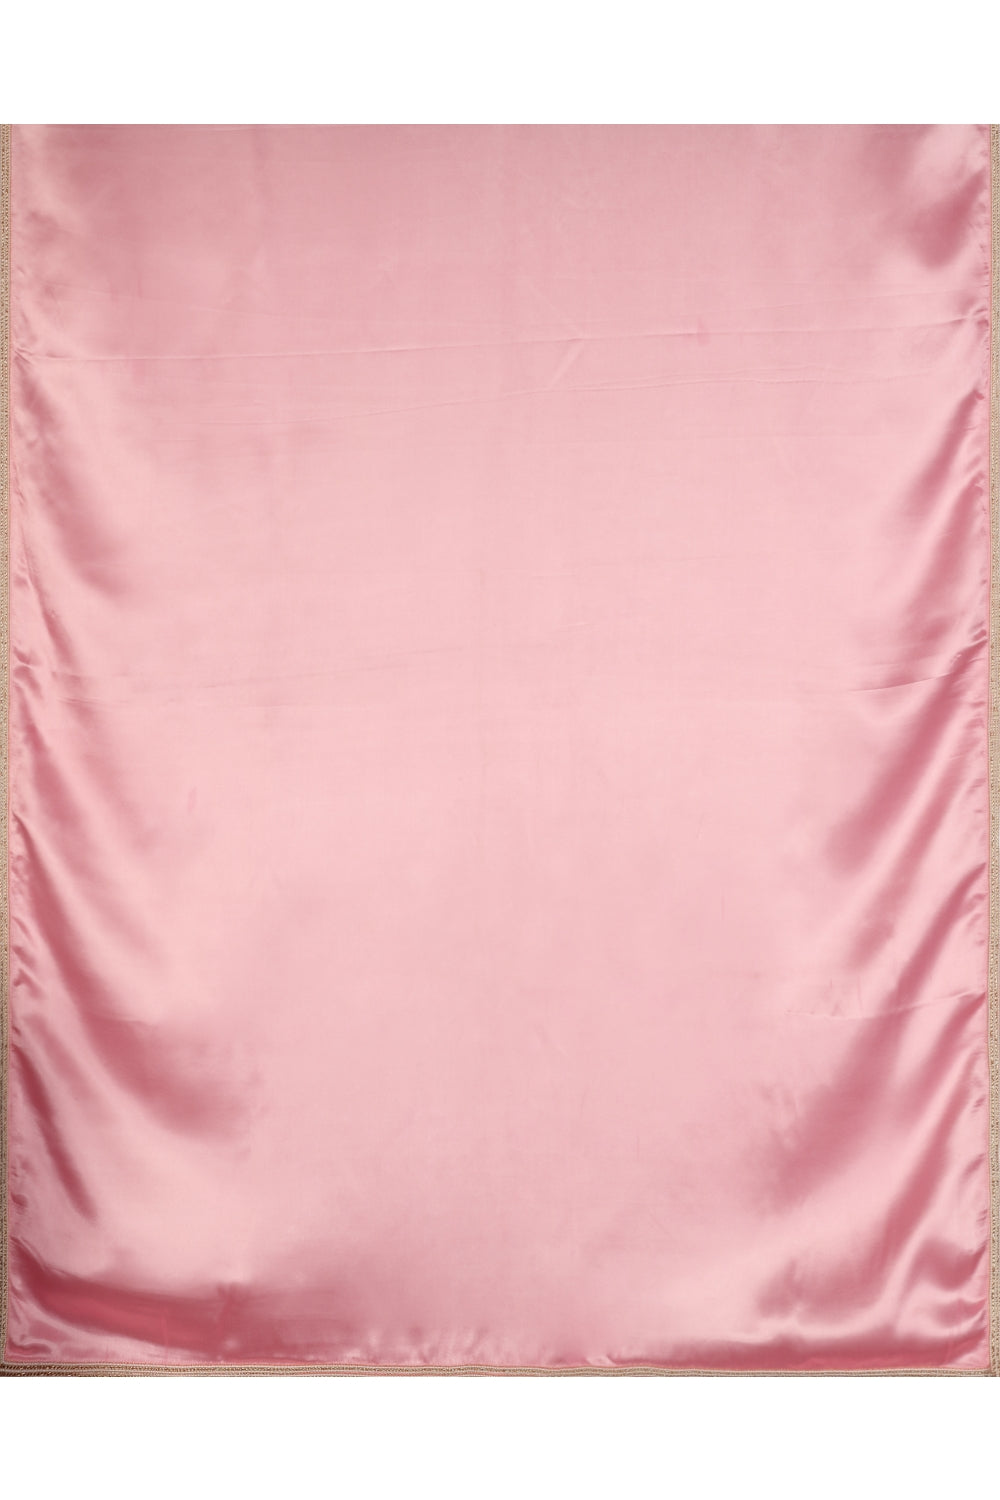 Bubble Gum Pink Hand Embroidered Saree Devam